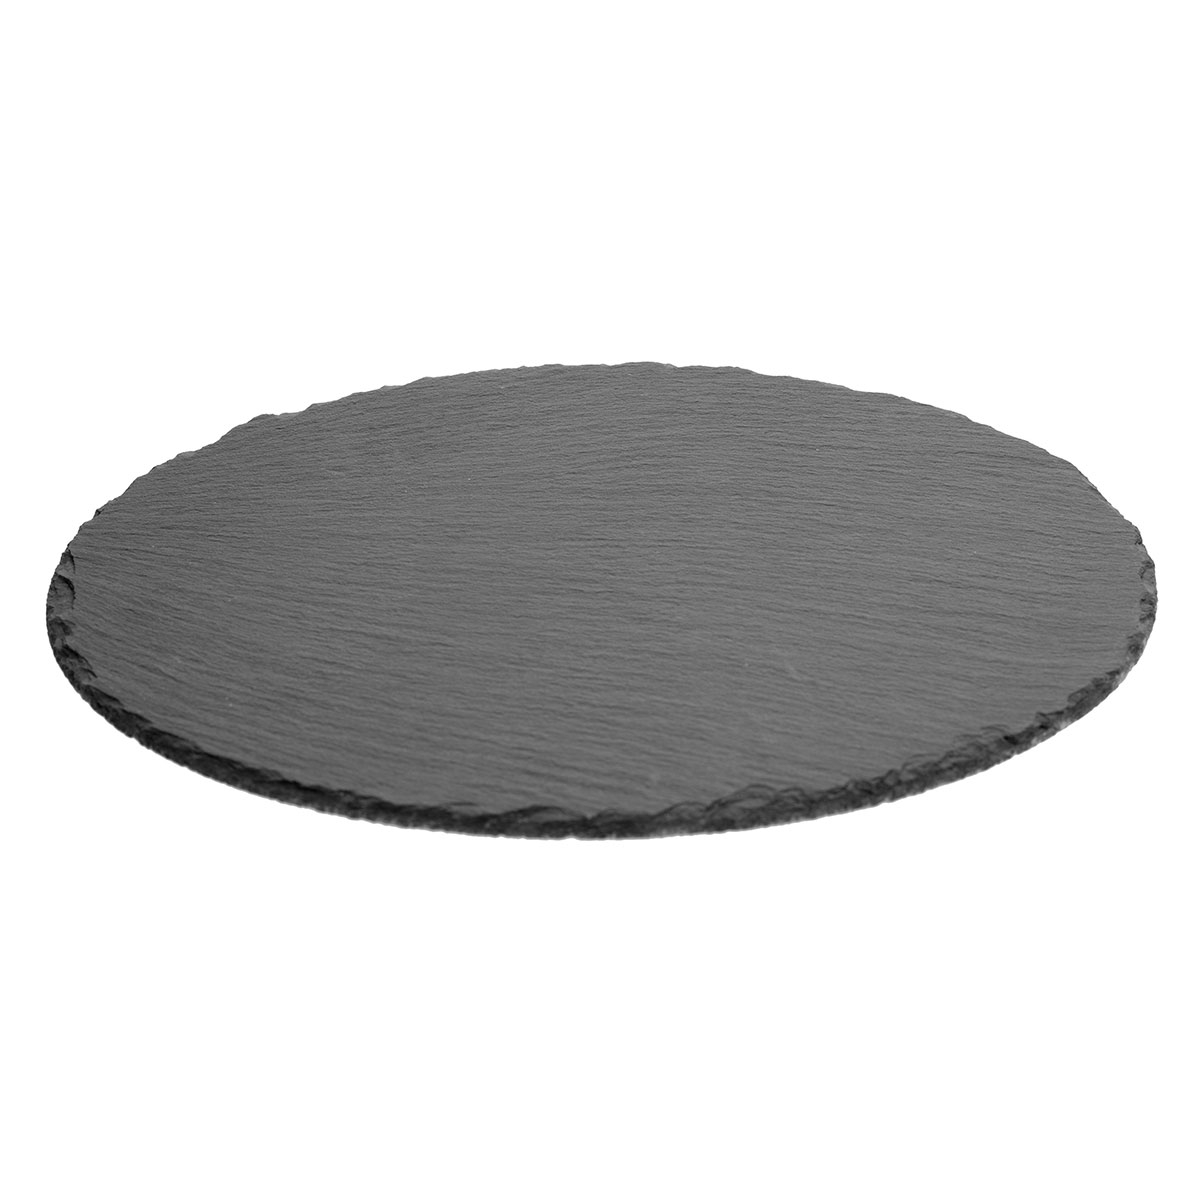 Πλατώ Σερβιρίσματος (Φ28) S-D Slate Plate 160700